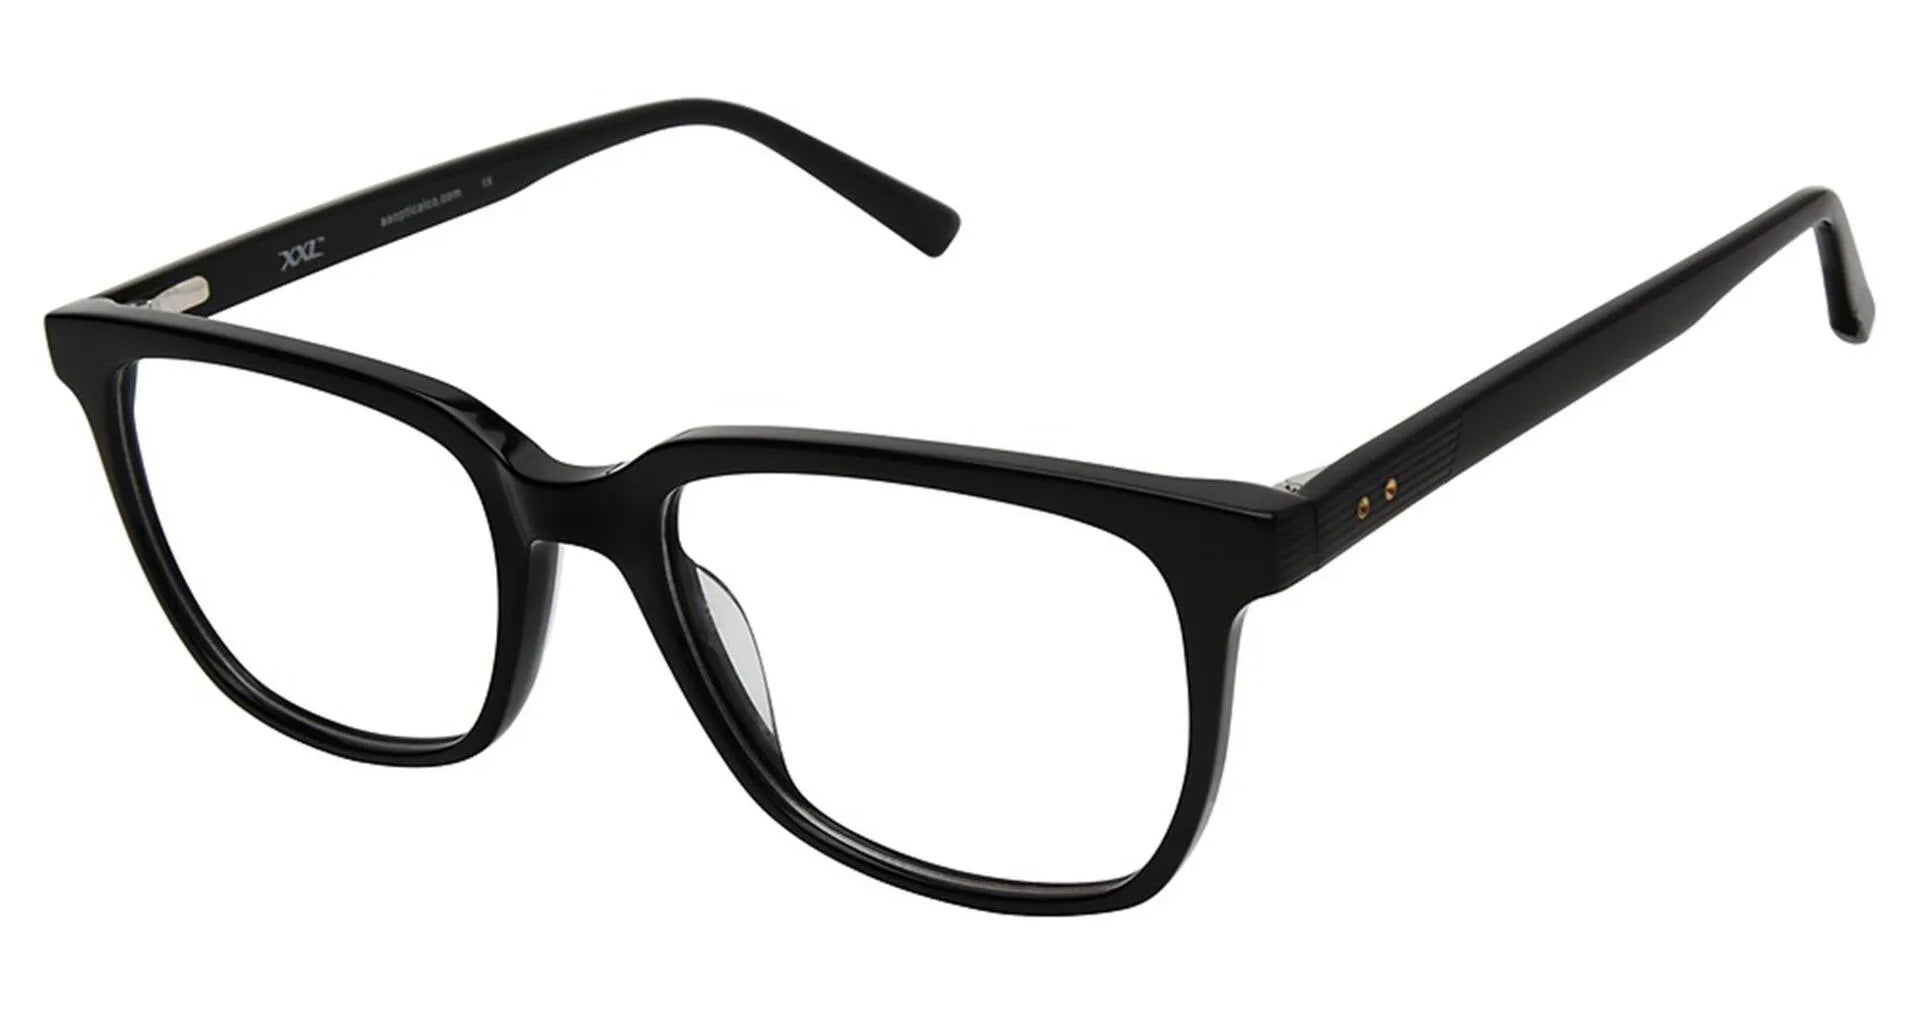 XXL Eyewear Thresher Eyeglasses Black